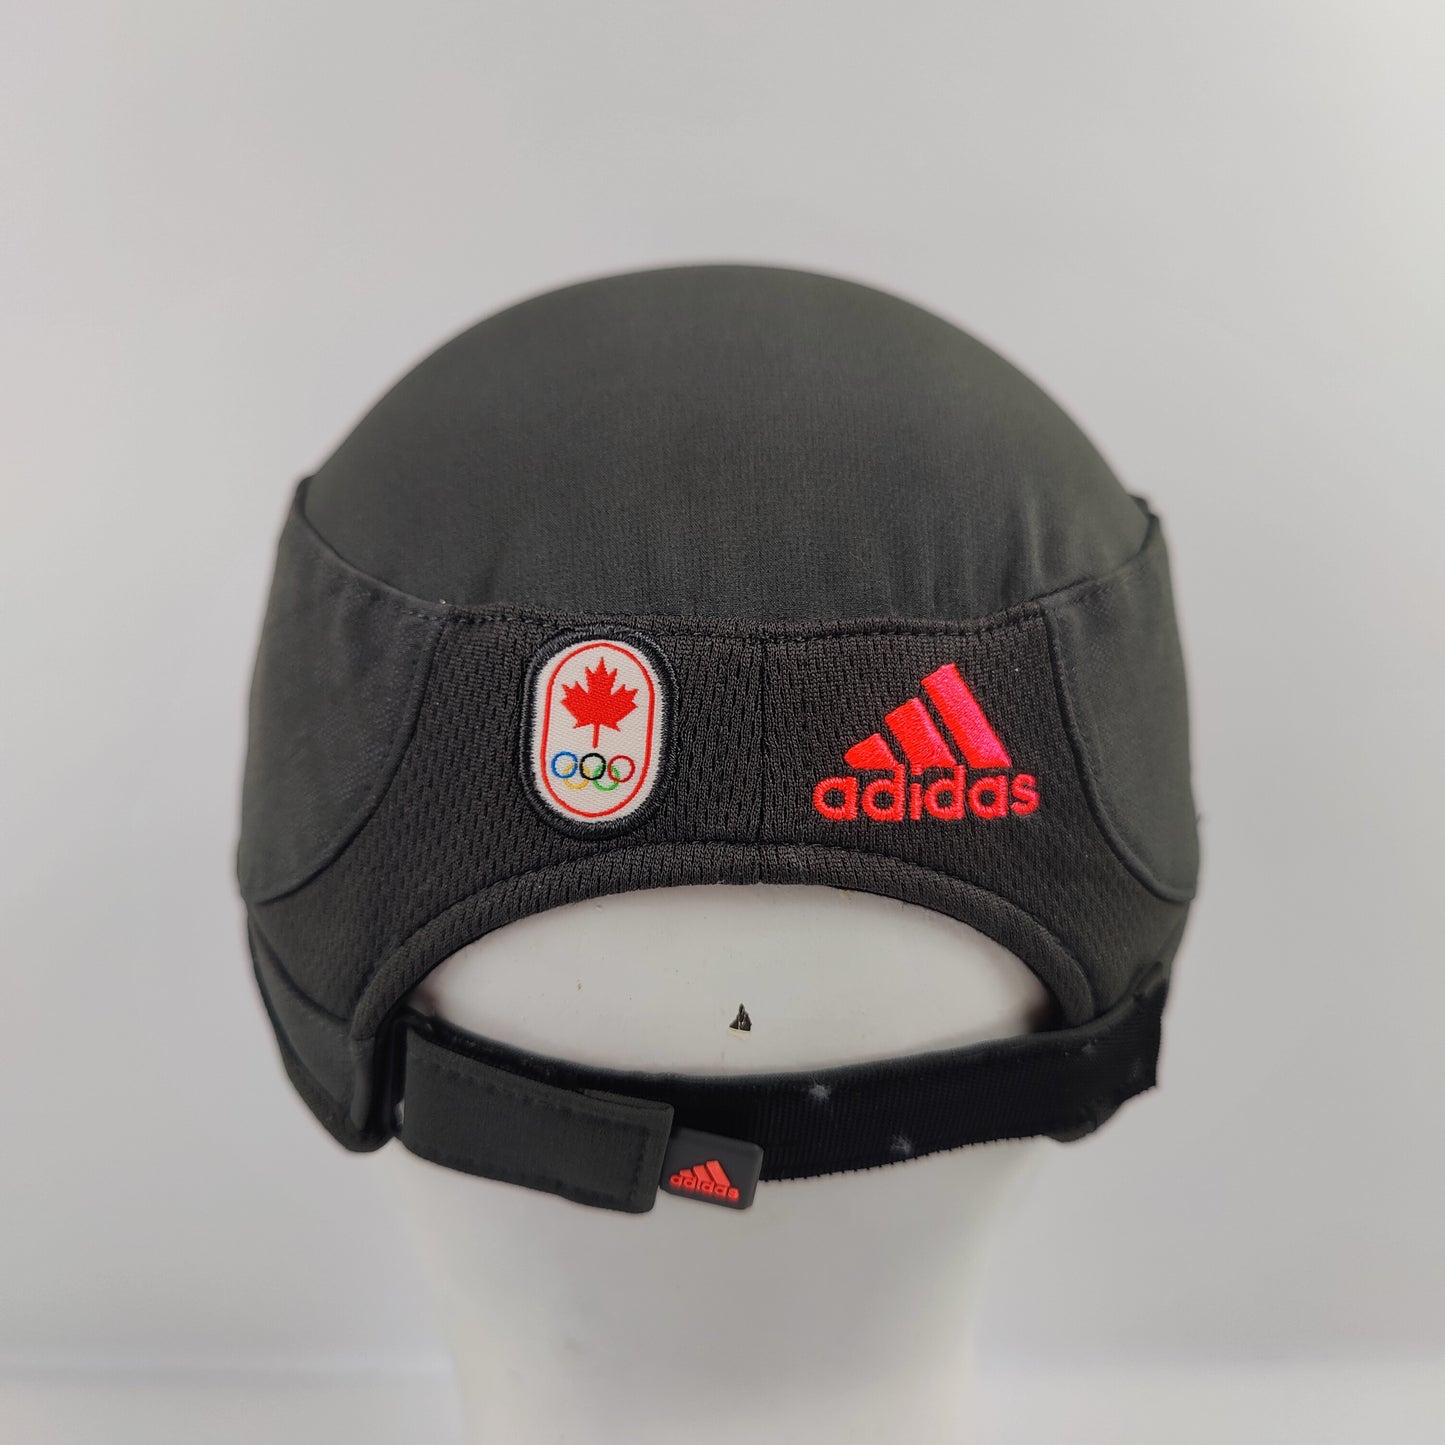 Adidas Canada Olympics Baseball Cap - Black - 1084